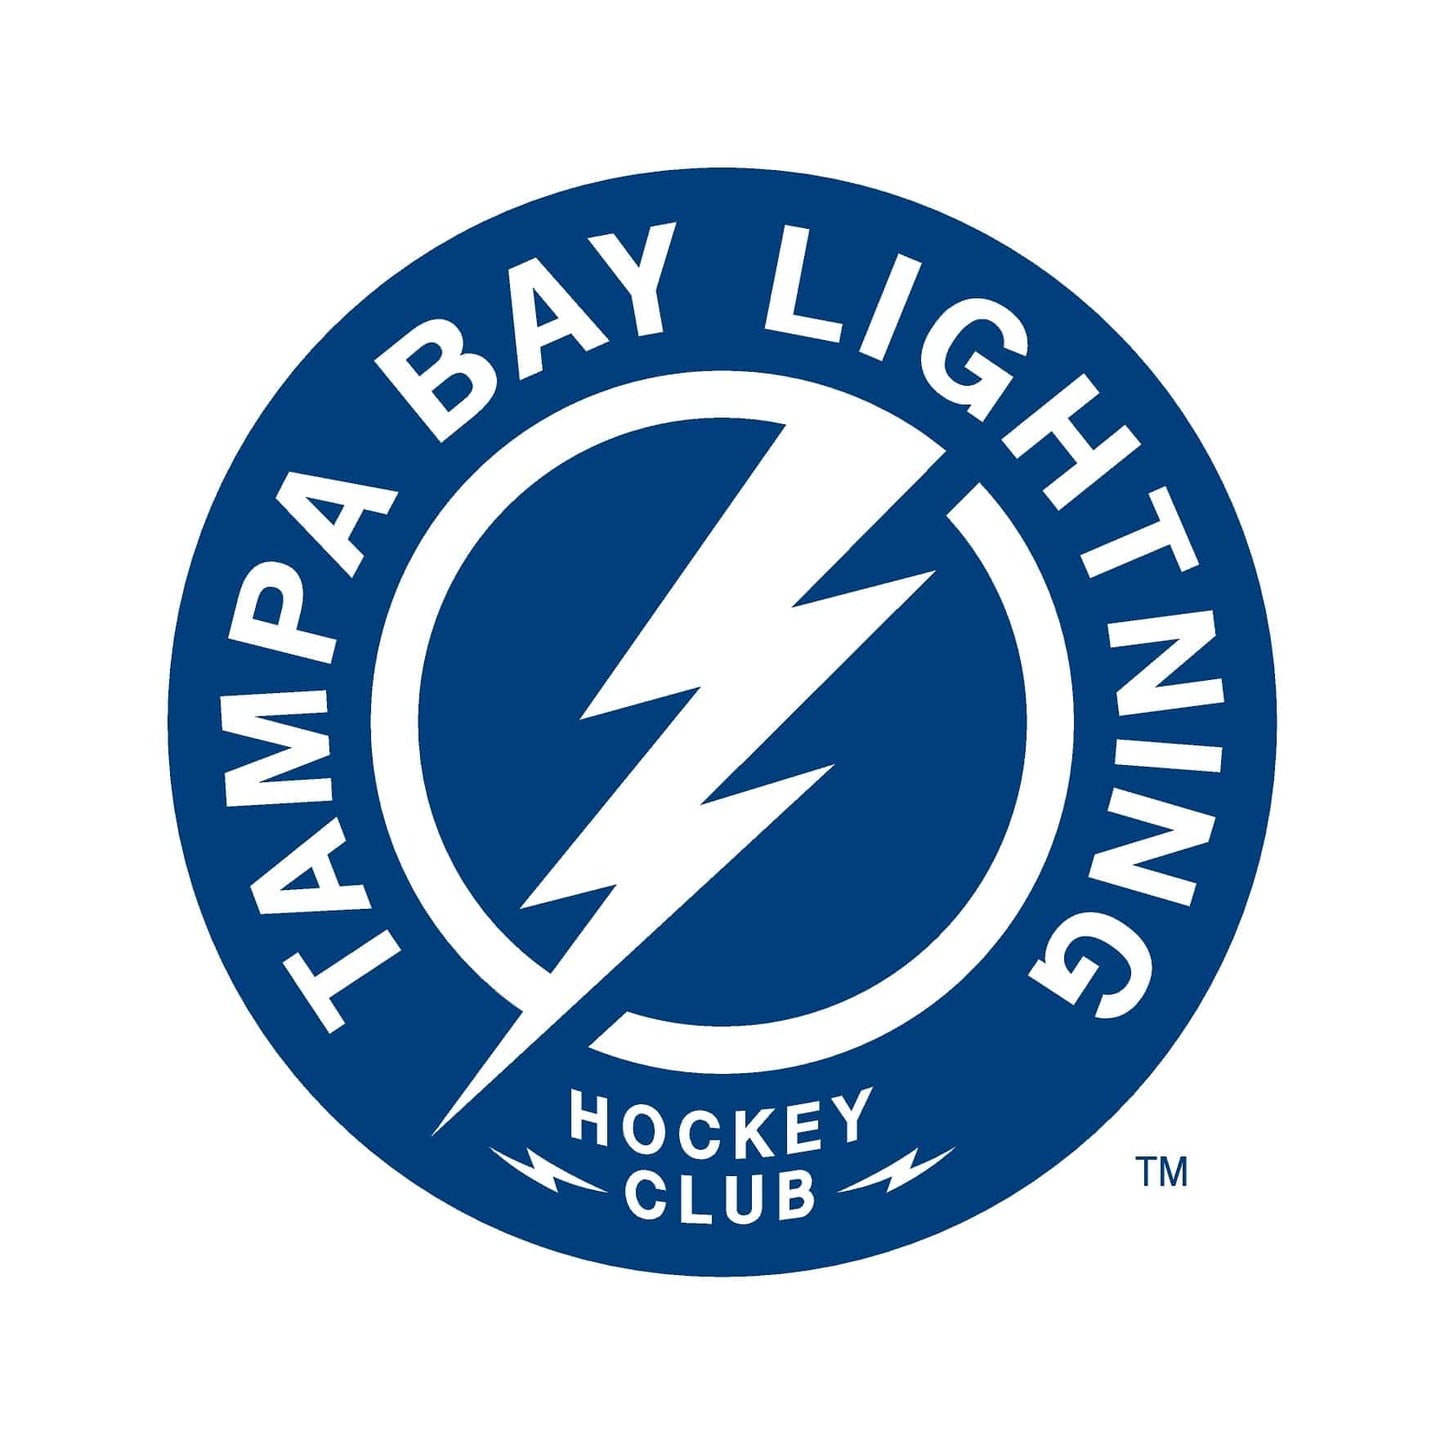 Tampa Bay Lightning® Puck Light Lens